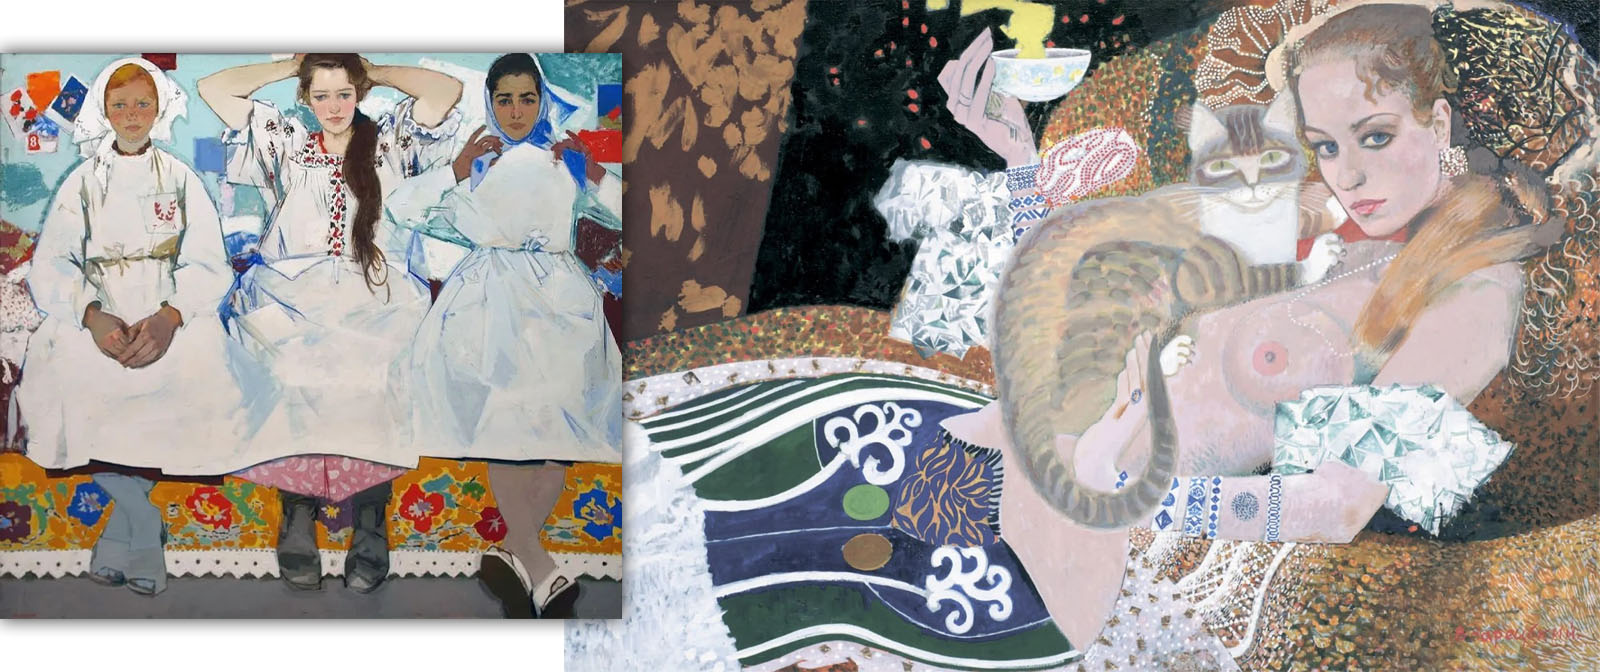 Критиковали за «голопопый лубок», но прославился совсем другими картинами. «Донецкий Климт» Виктор Зарецкий.